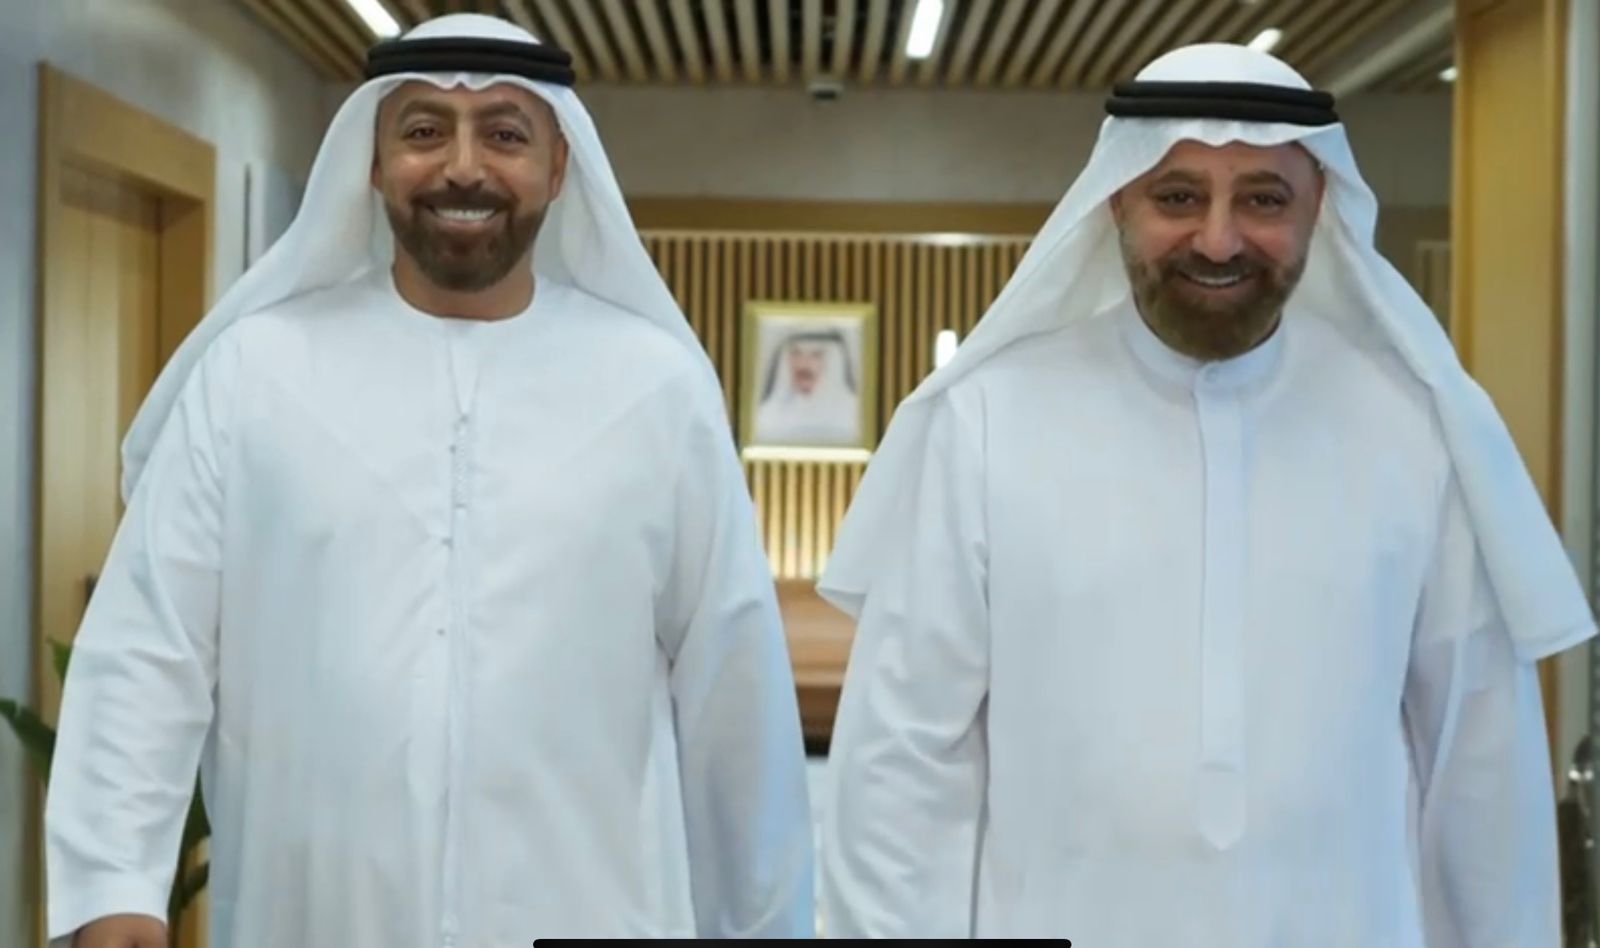 بالفيديو : البداد كابيتال والبداد سعودي القابضه خبرات متطوره في عالم المباني وتجهيزاتها 